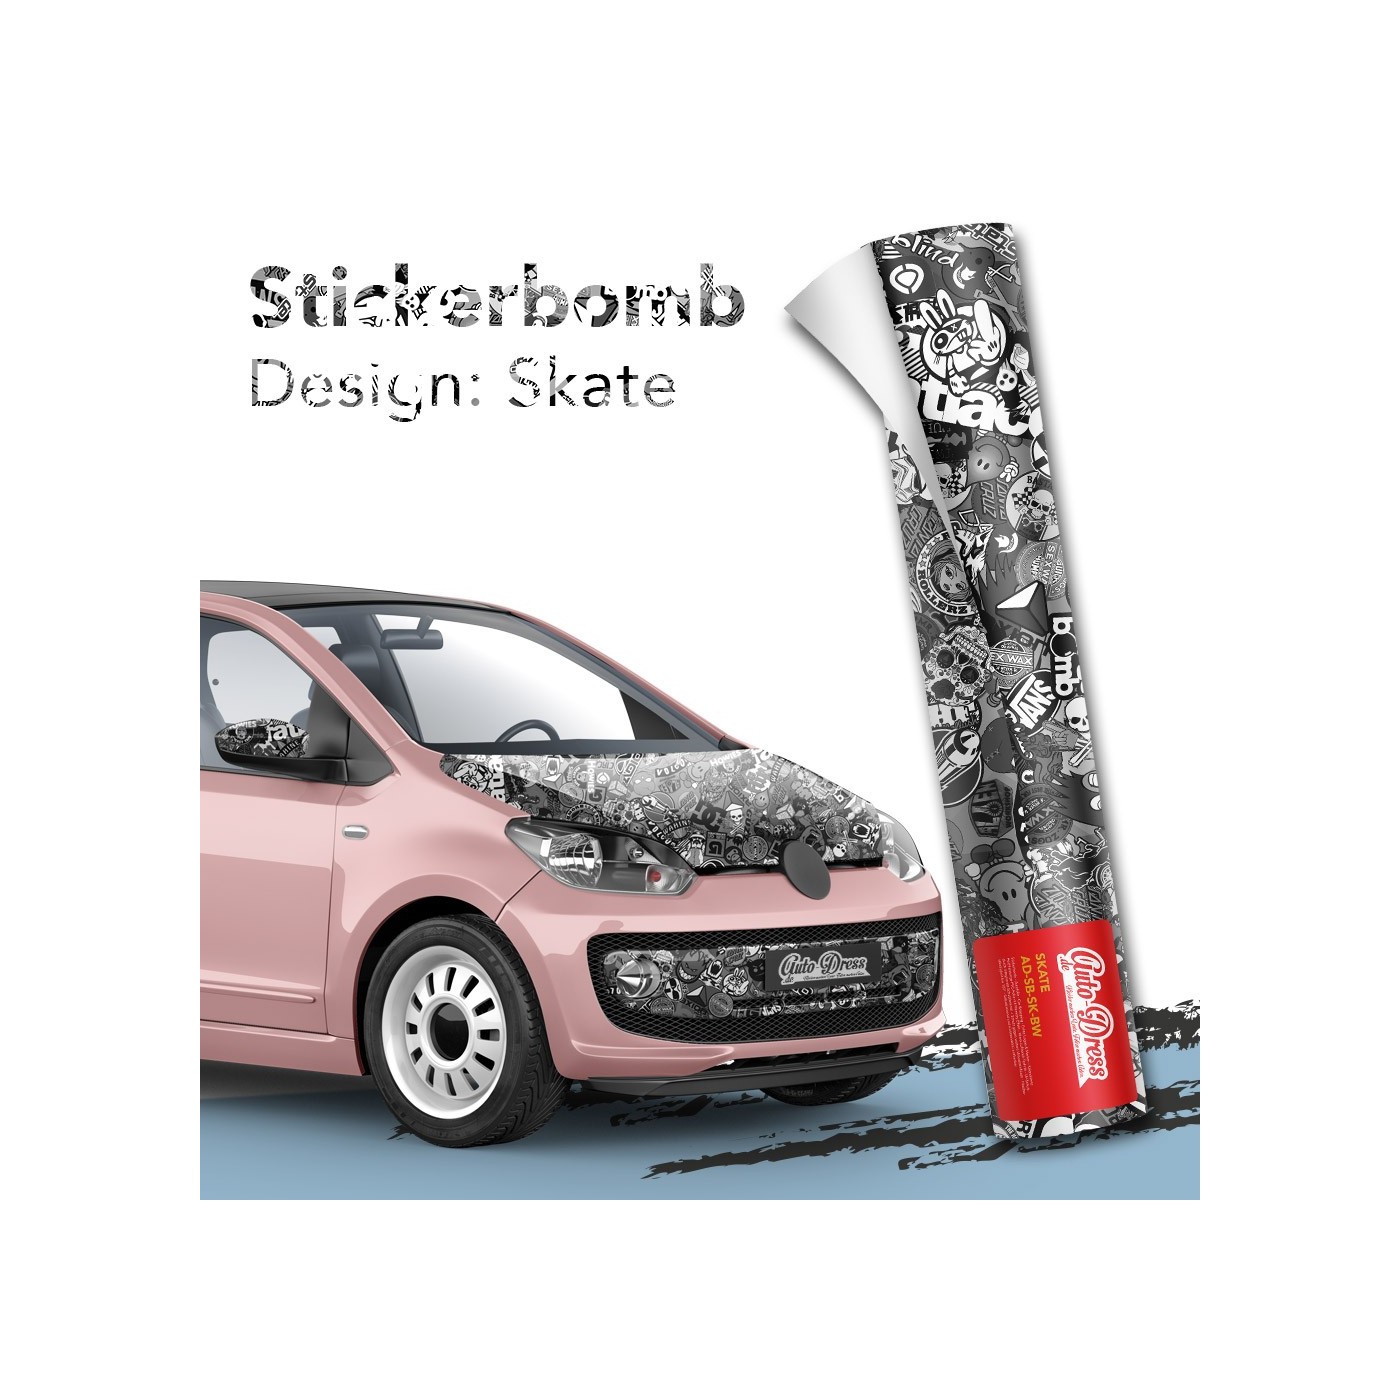 XL Stickerbomb-Folie Sticker Bomb Car-wrapping Luftkanal Auto-folie  schwarz-weiß